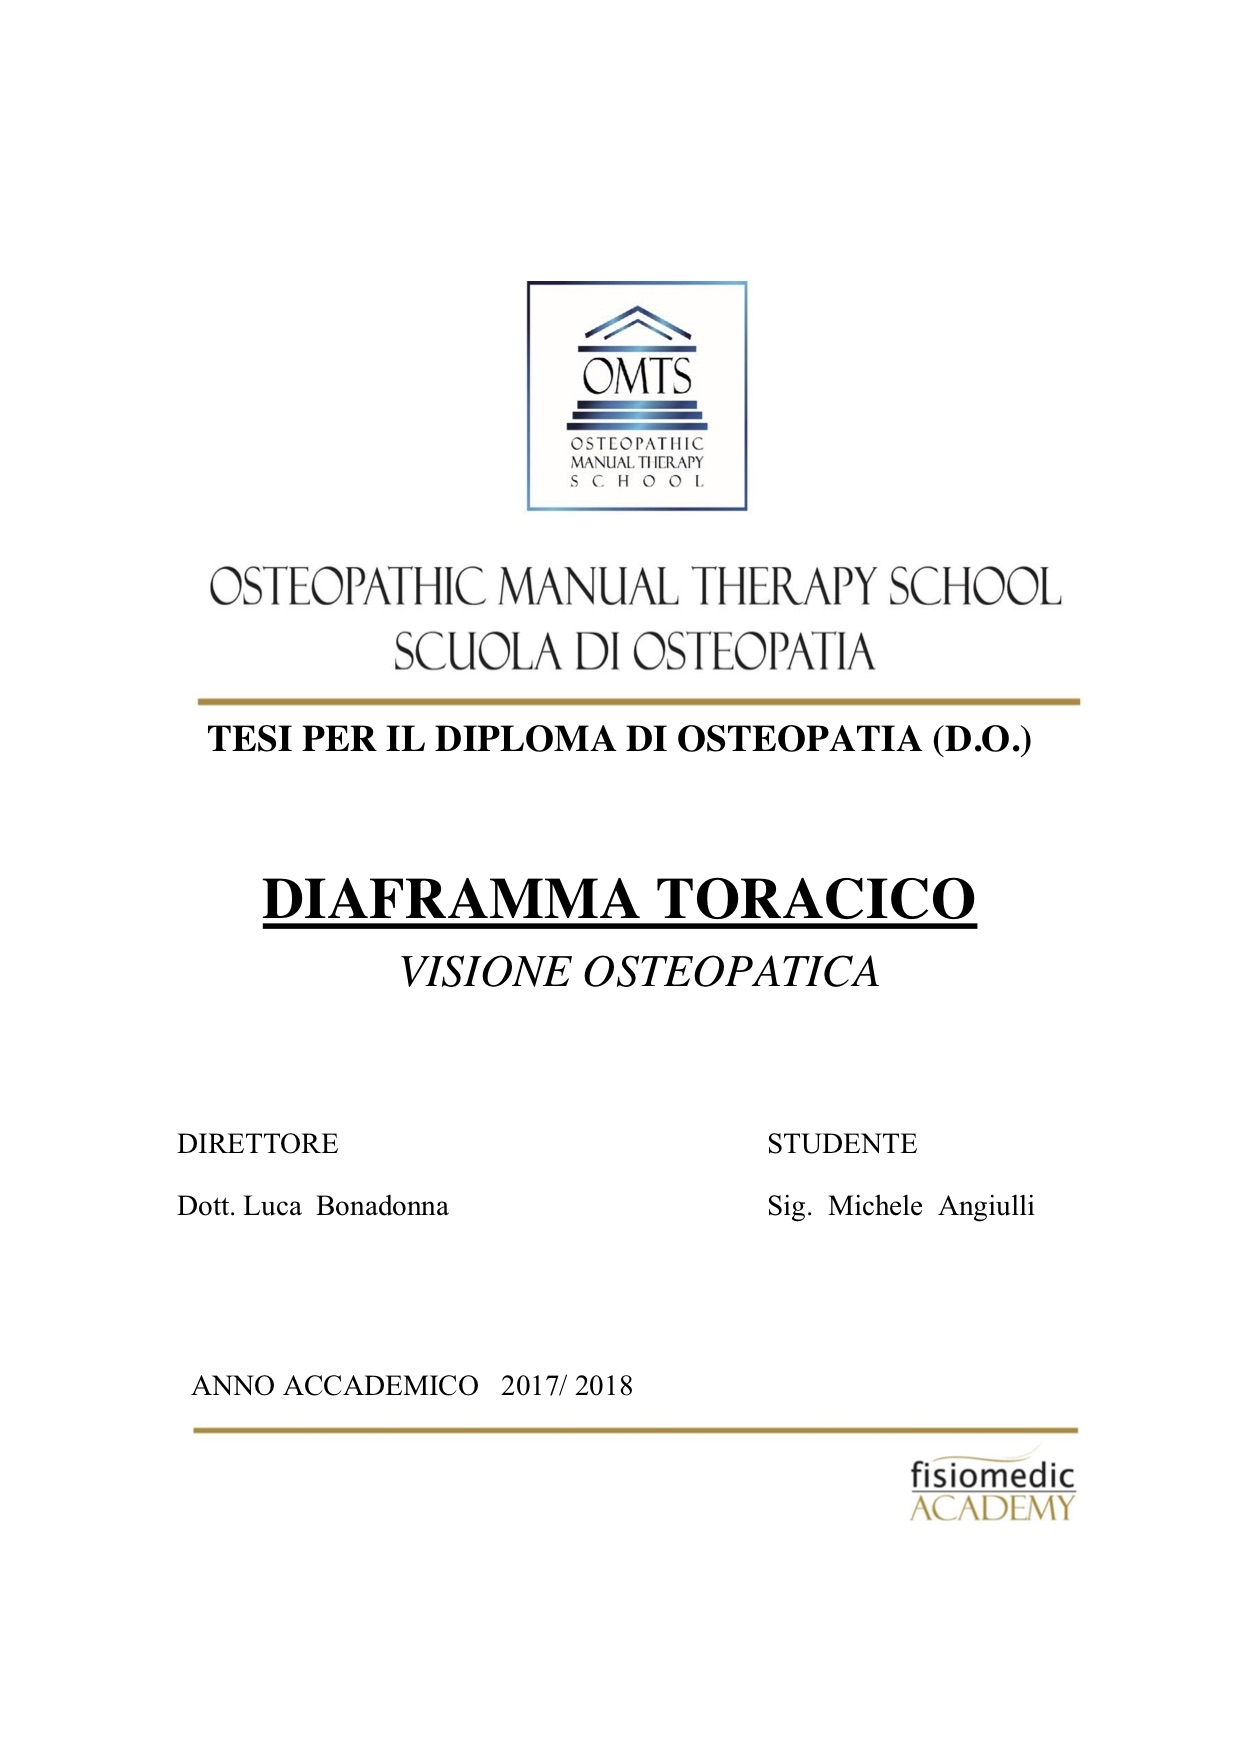 Michele Angiulli Tesi Diploma Osteopatia 2018